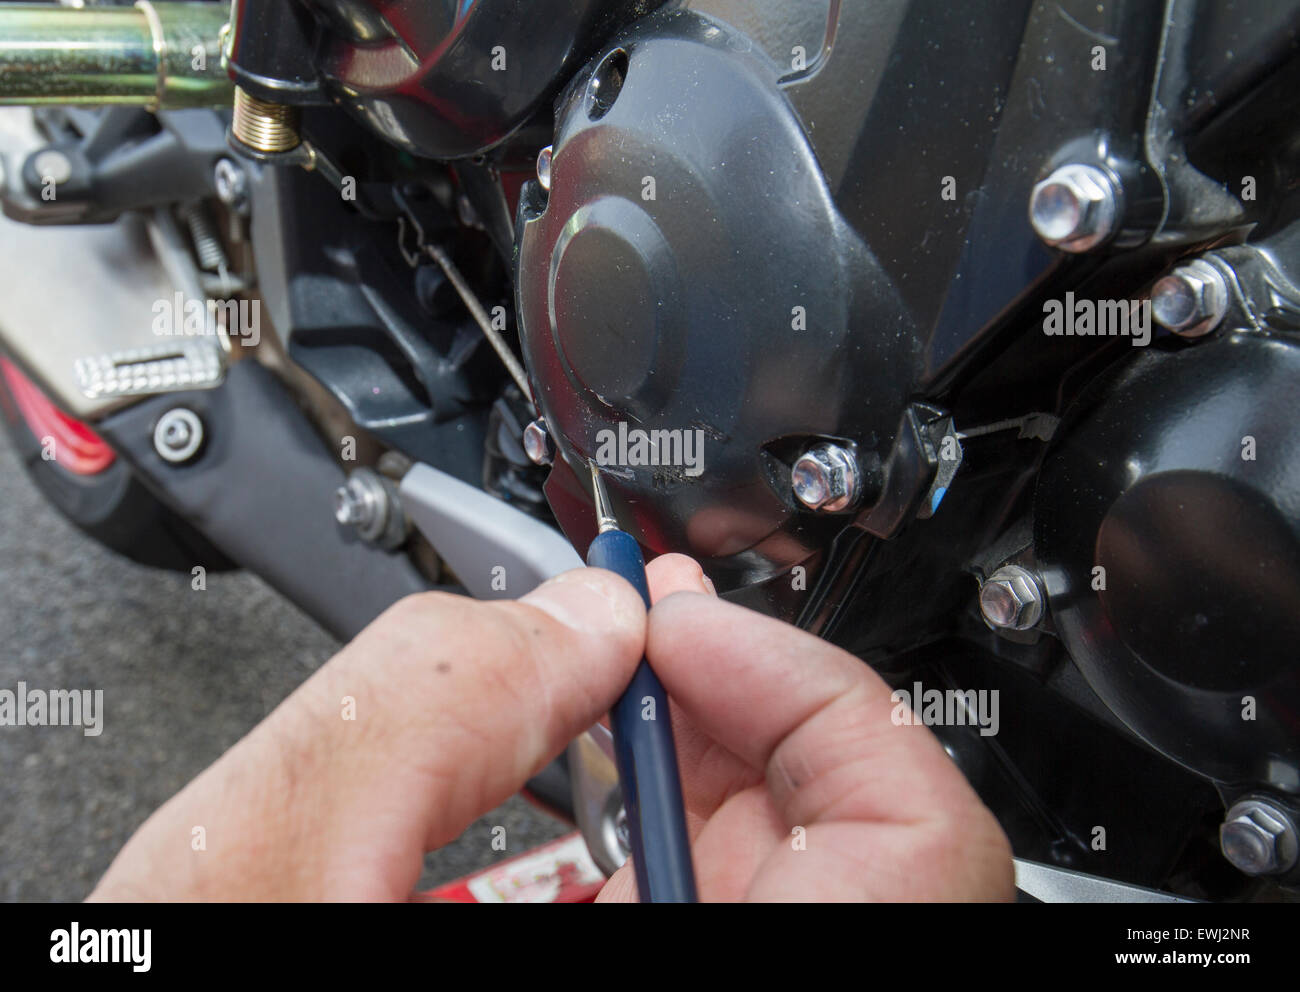 Malerei-Kratzer auf Motorrad-Kurbelgehäuse Stockfotografie - Alamy